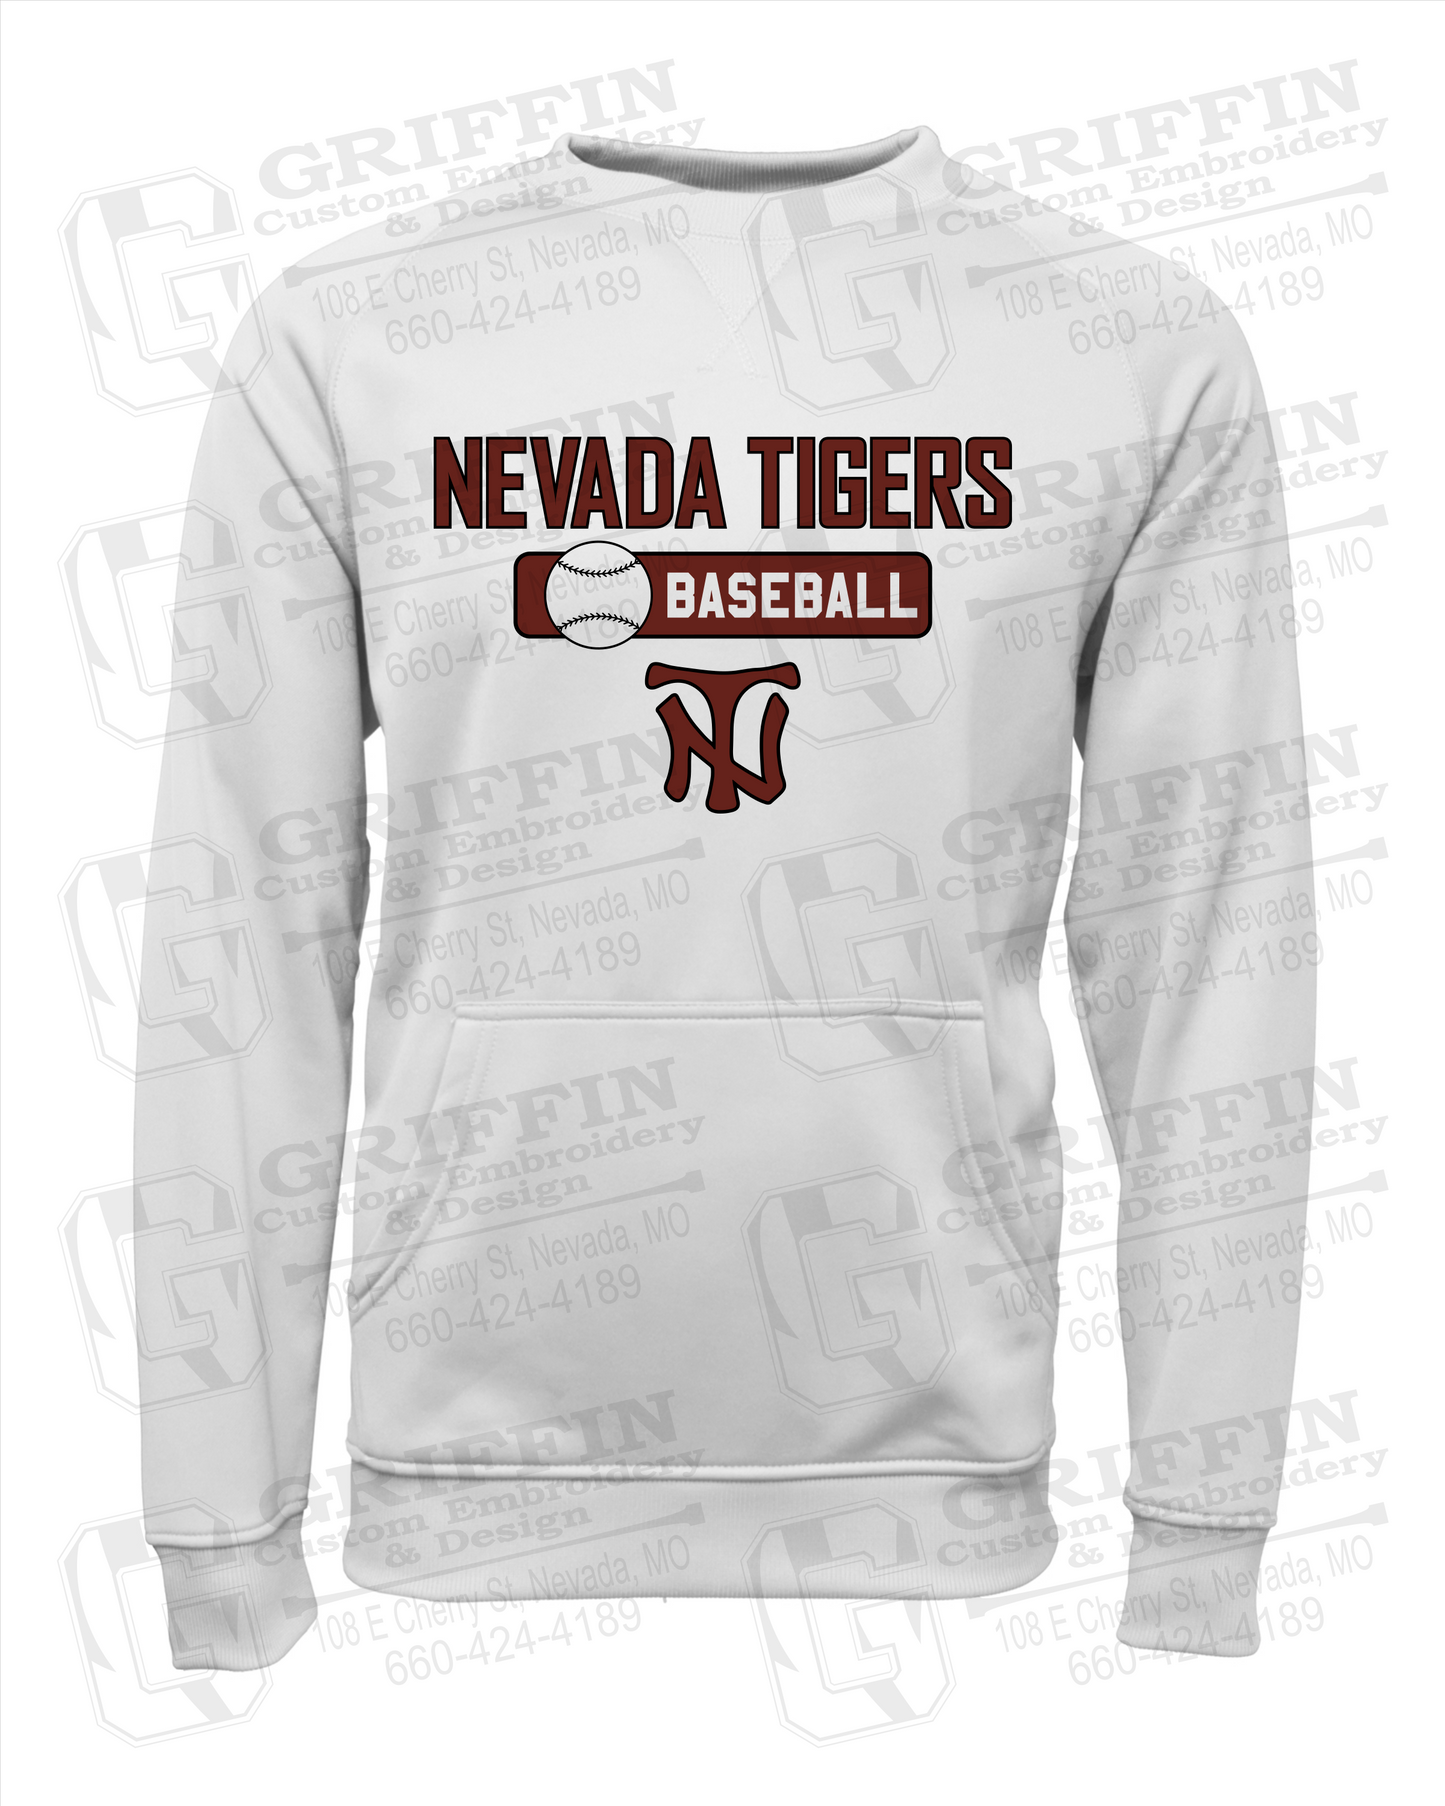 Nevada Tigers 24-S Youth Sweatshirt - Baseball